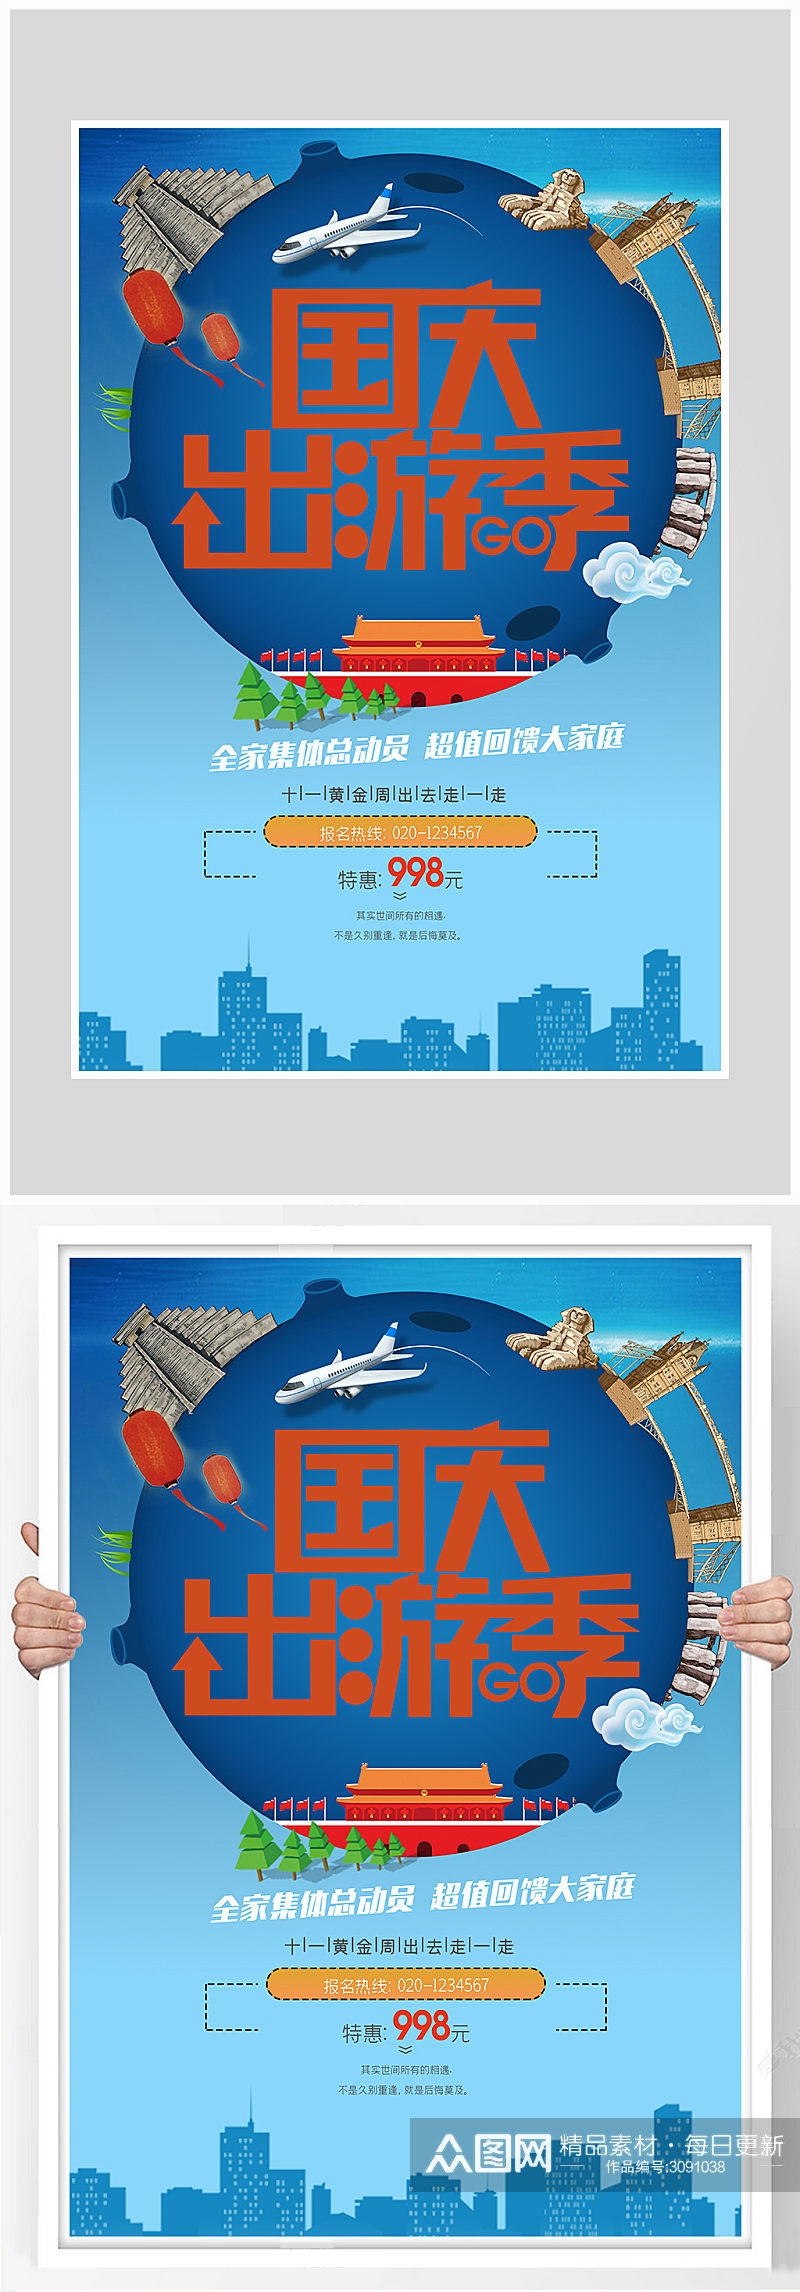 创意国庆旅游海报设计素材